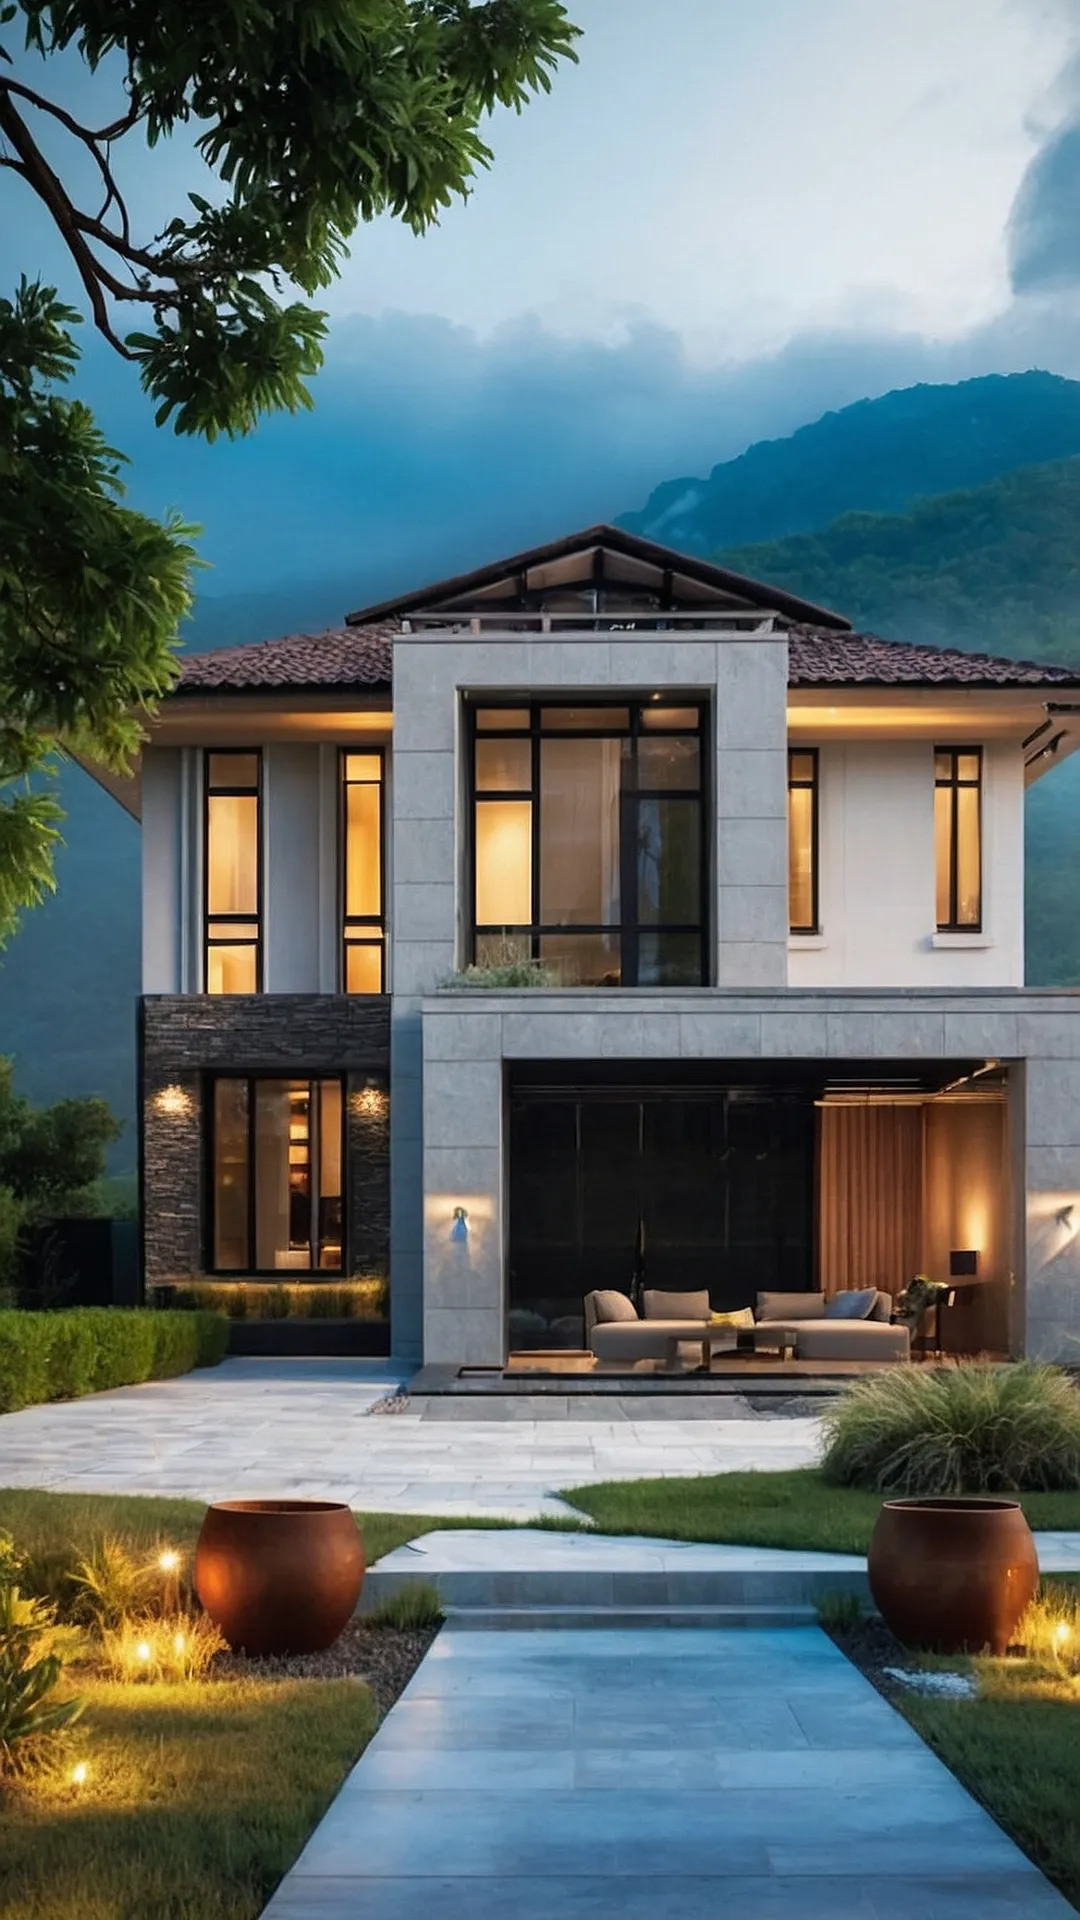 Artistic Architectural Designs: Modern Villa Edition